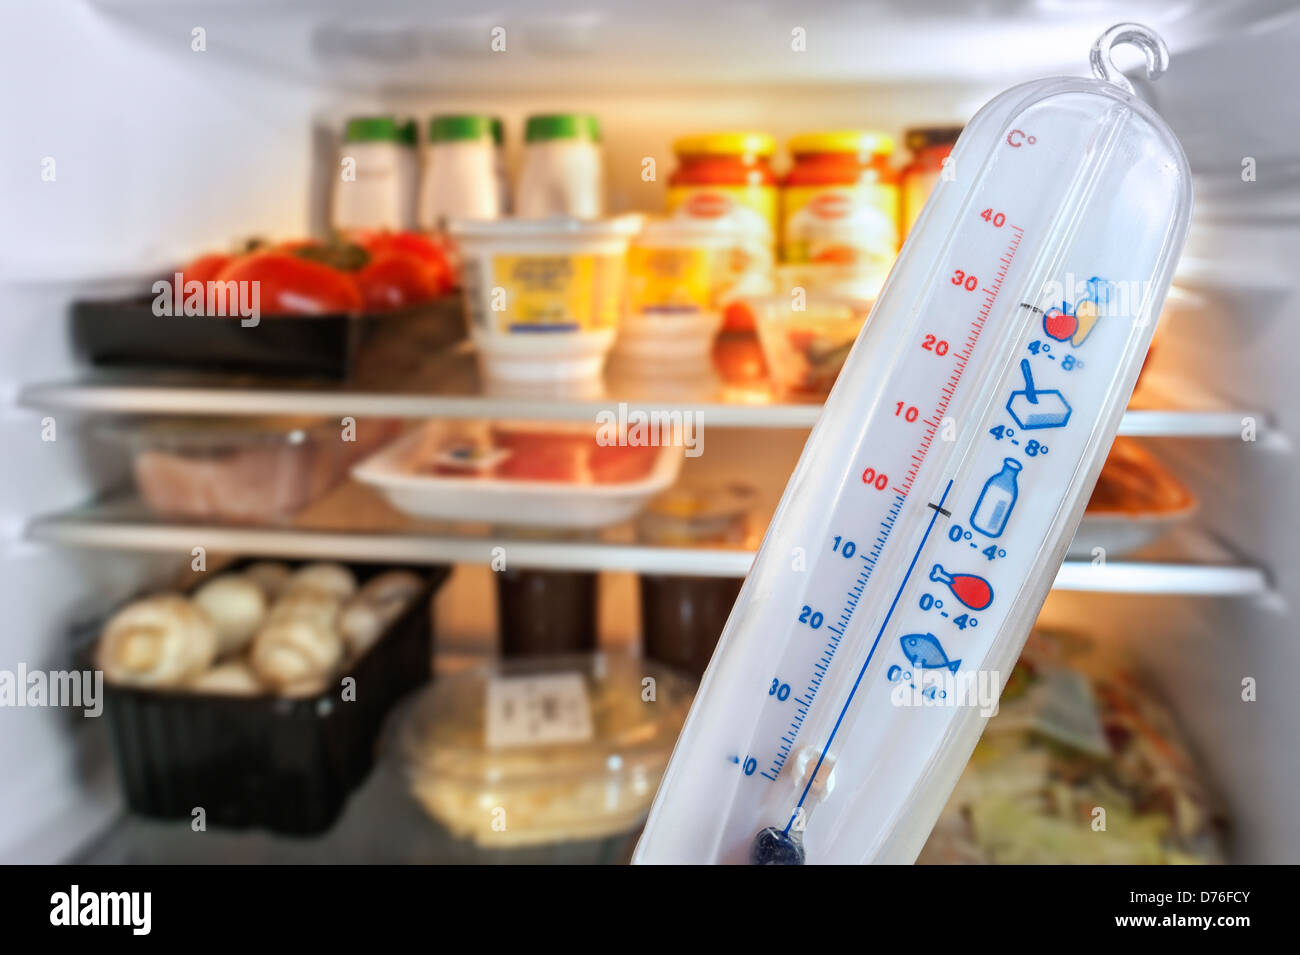 Termometro nella parte anteriore del frigorifero aperto / frigorifero in cucina Foto Stock